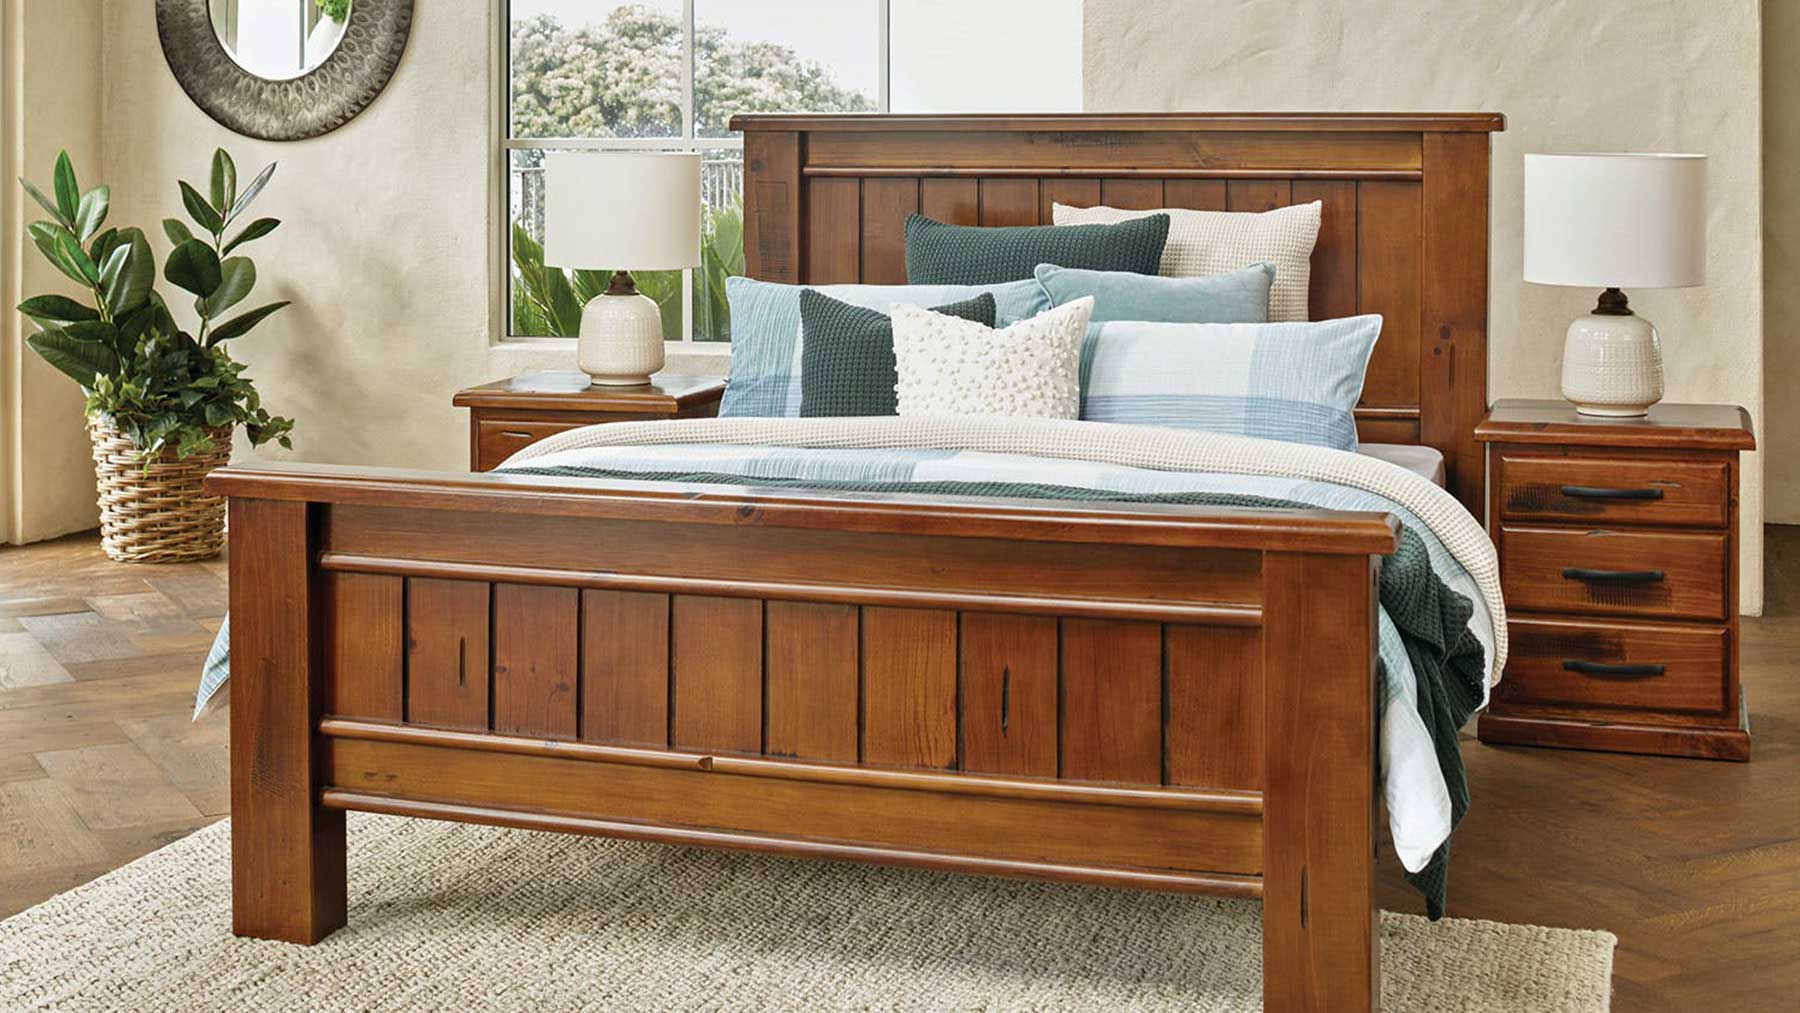 Giường ngủ gỗ tự nhiên phong cách thanh lịch GHS-9033